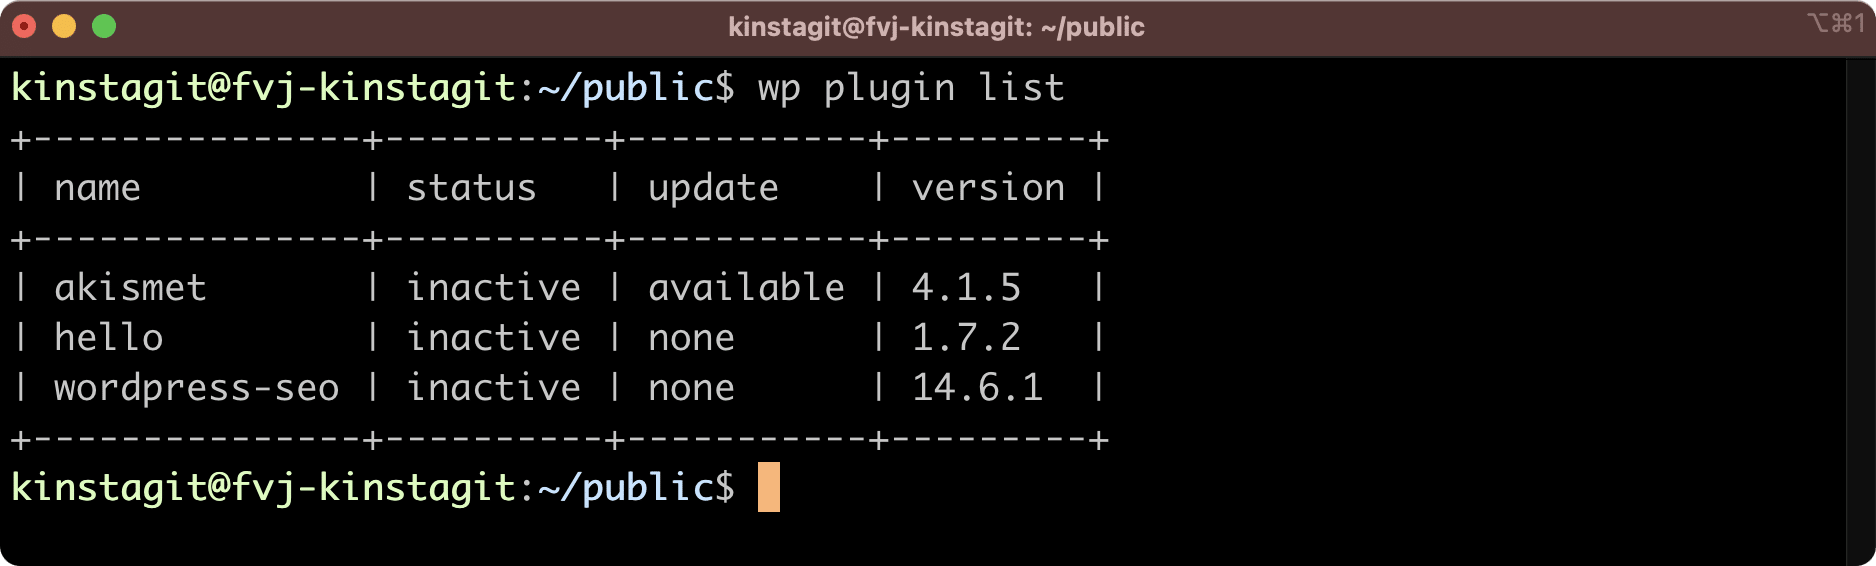 Il plugin Yoast SEO è stato distribuito tramite GitLab.